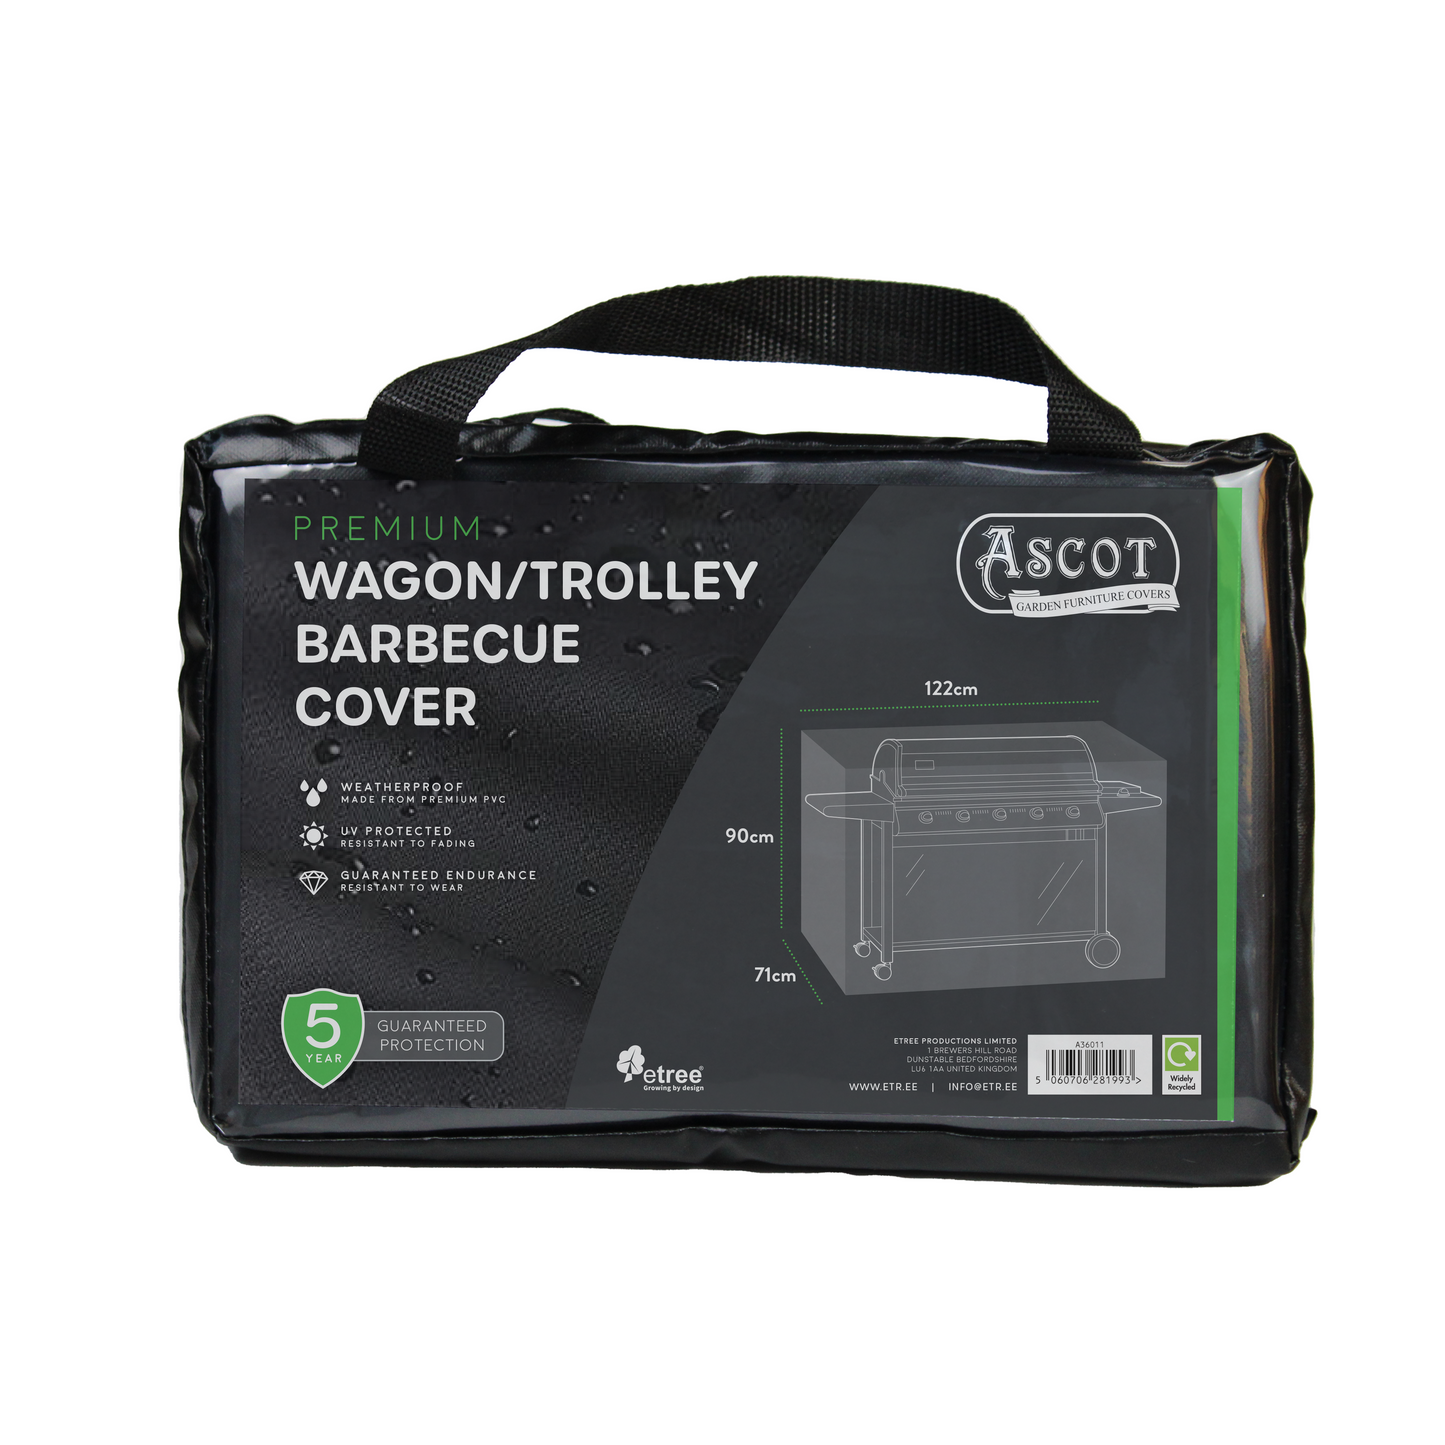 Premium Wagon/ Trolley Barbecue Cover - 122 X 71 X 90 (H) cm